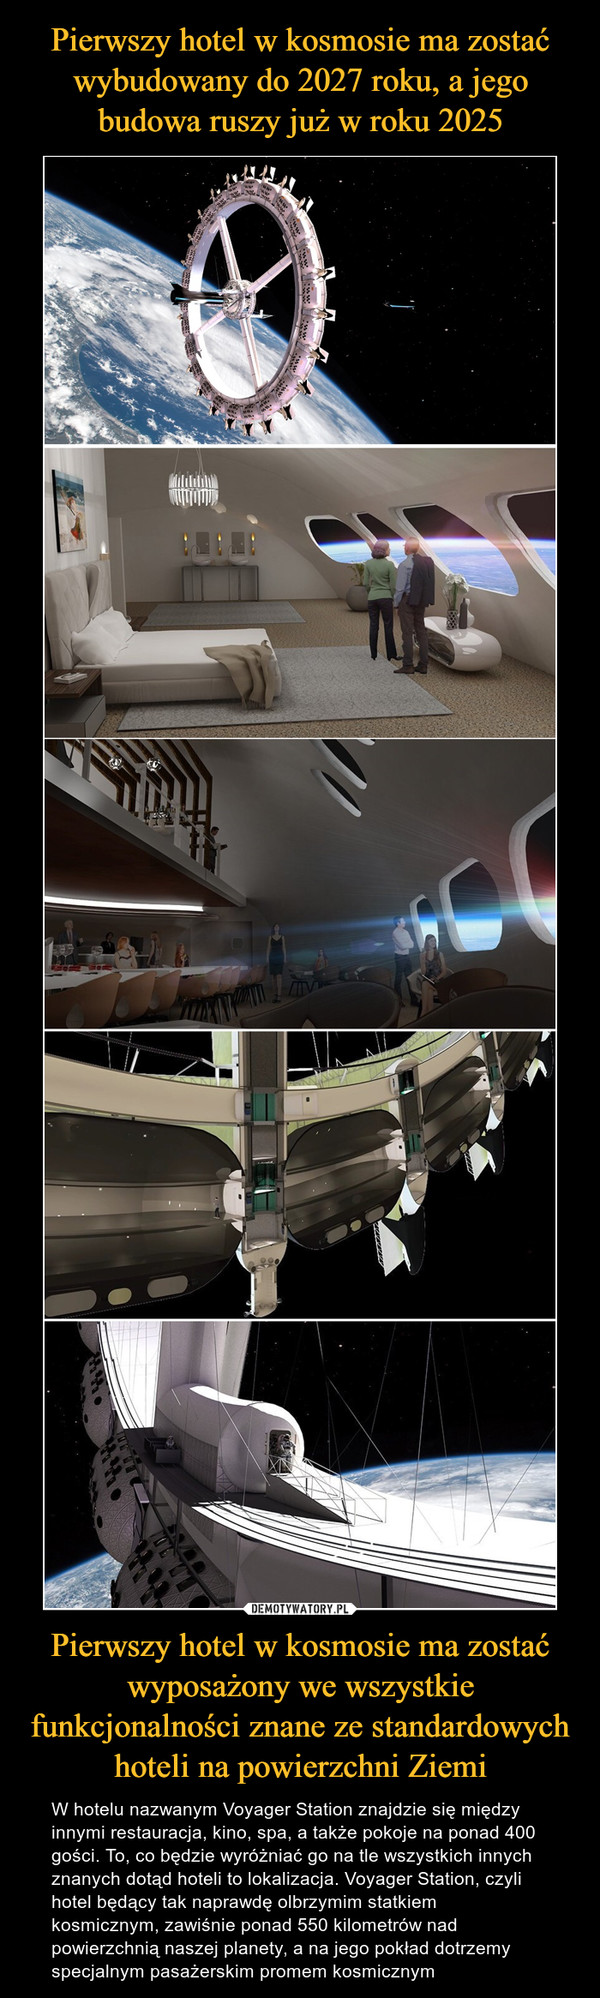 Pierwszy hotel w kosmosie ma zostać wyposażony we wszystkie funkcjonalności znane ze standardowych hoteli na powierzchni Ziemi – W hotelu nazwanym Voyager Station znajdzie się między innymi restauracja, kino, spa, a także pokoje na ponad 400 gości. To, co będzie wyróżniać go na tle wszystkich innych znanych dotąd hoteli to lokalizacja. Voyager Station, czyli hotel będący tak naprawdę olbrzymim statkiem kosmicznym, zawiśnie ponad 550 kilometrów nad powierzchnią naszej planety, a na jego pokład dotrzemy specjalnym pasażerskim promem kosmicznym 